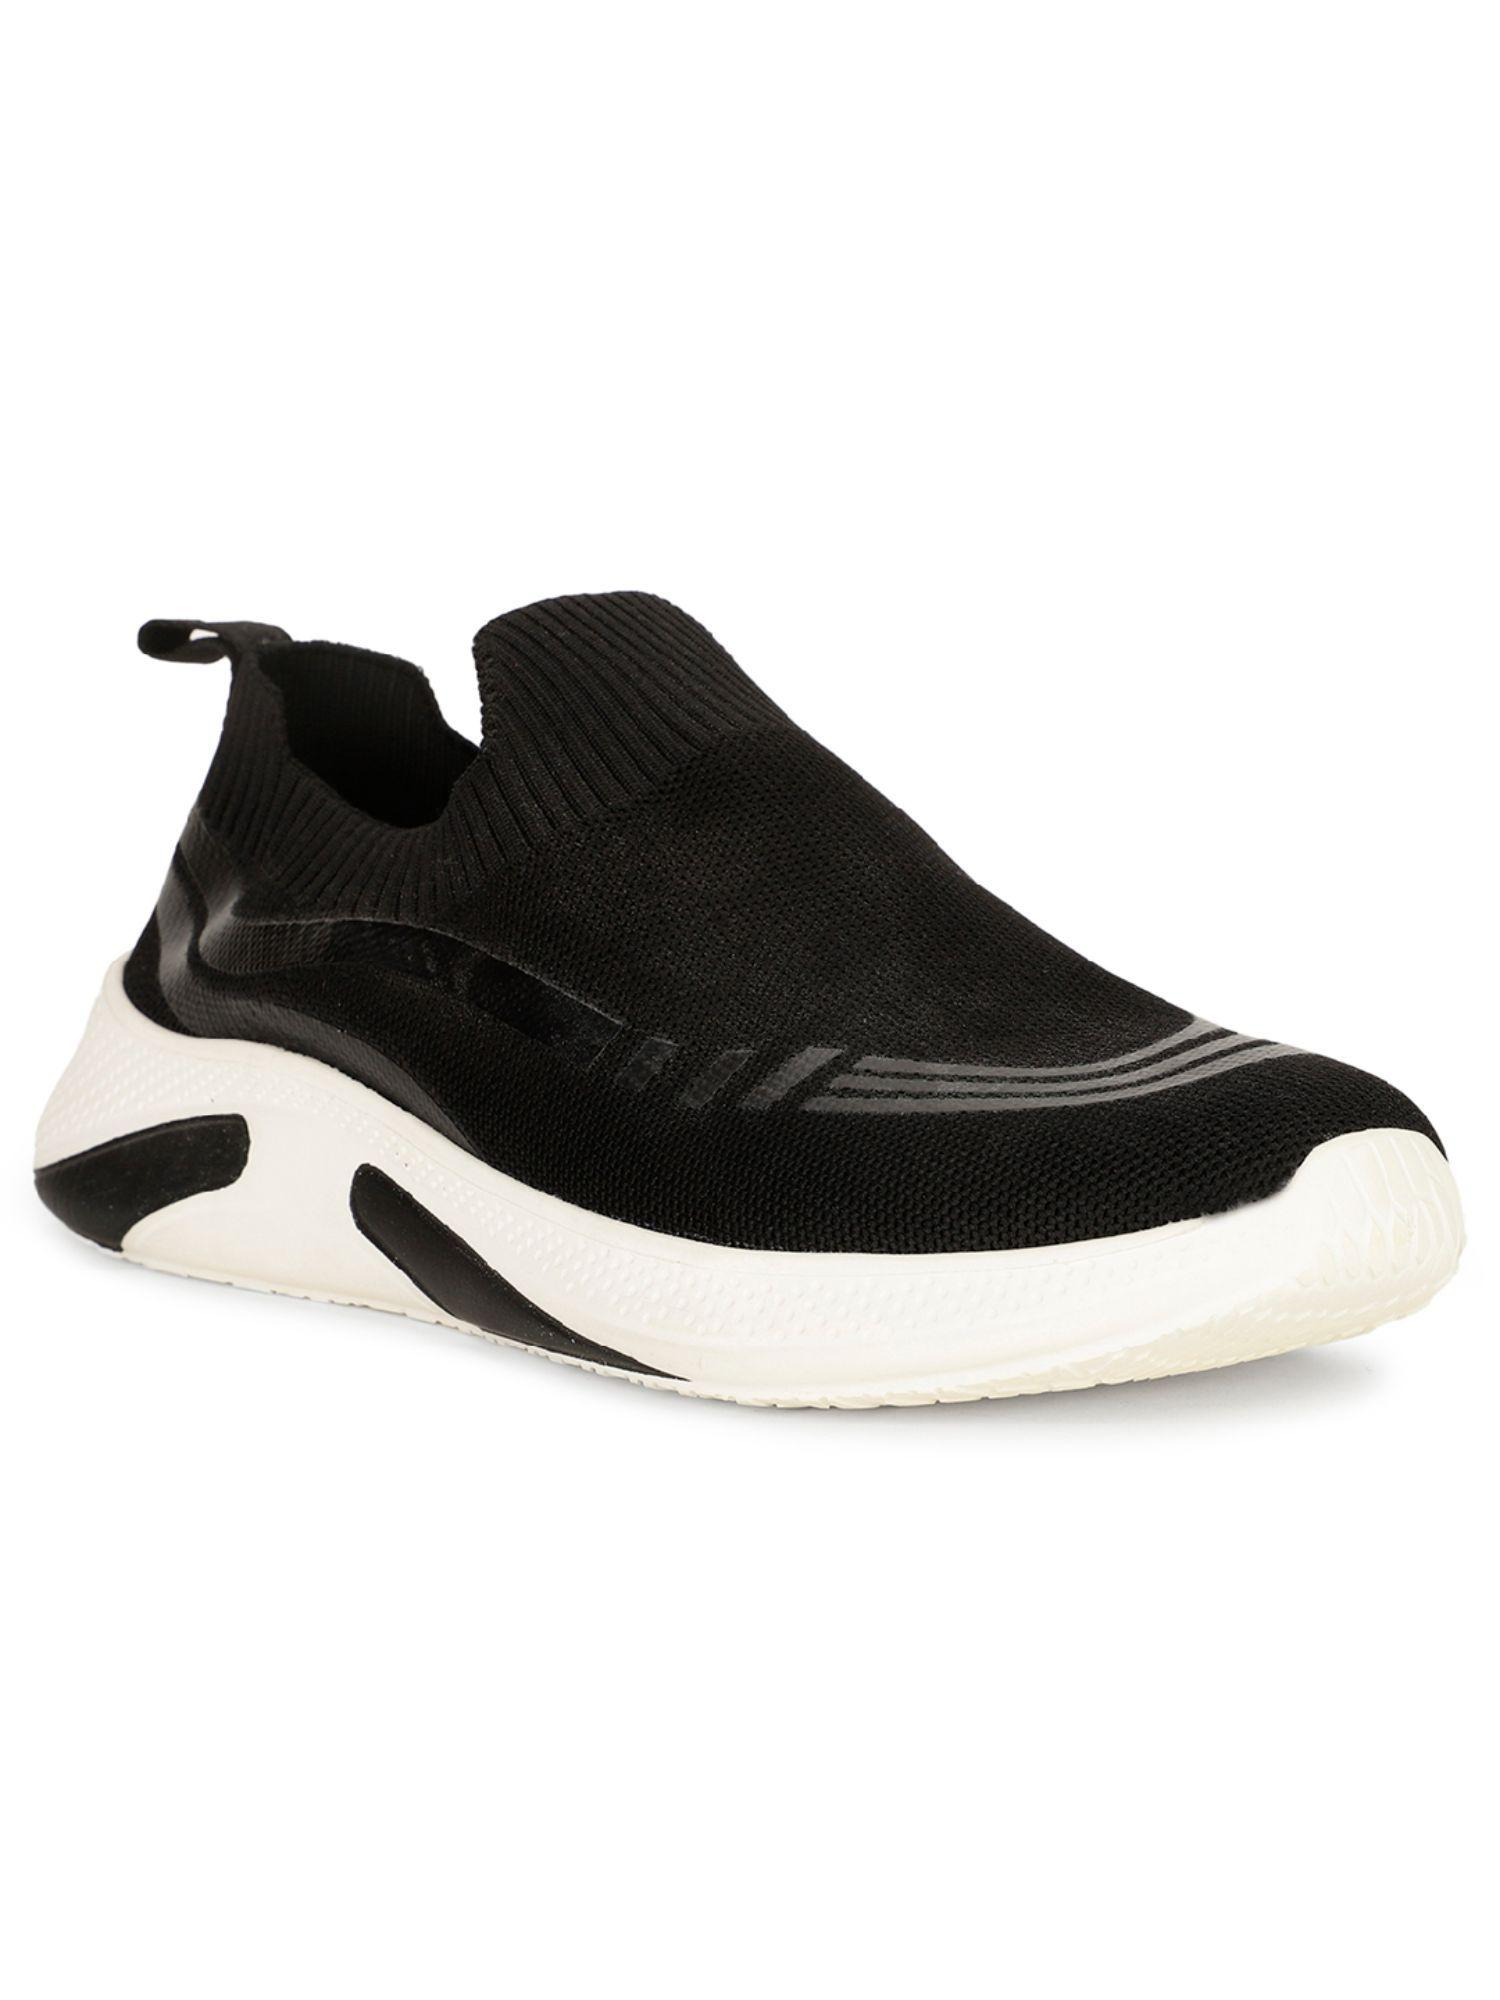 mens-black-slip-on-running-shoes